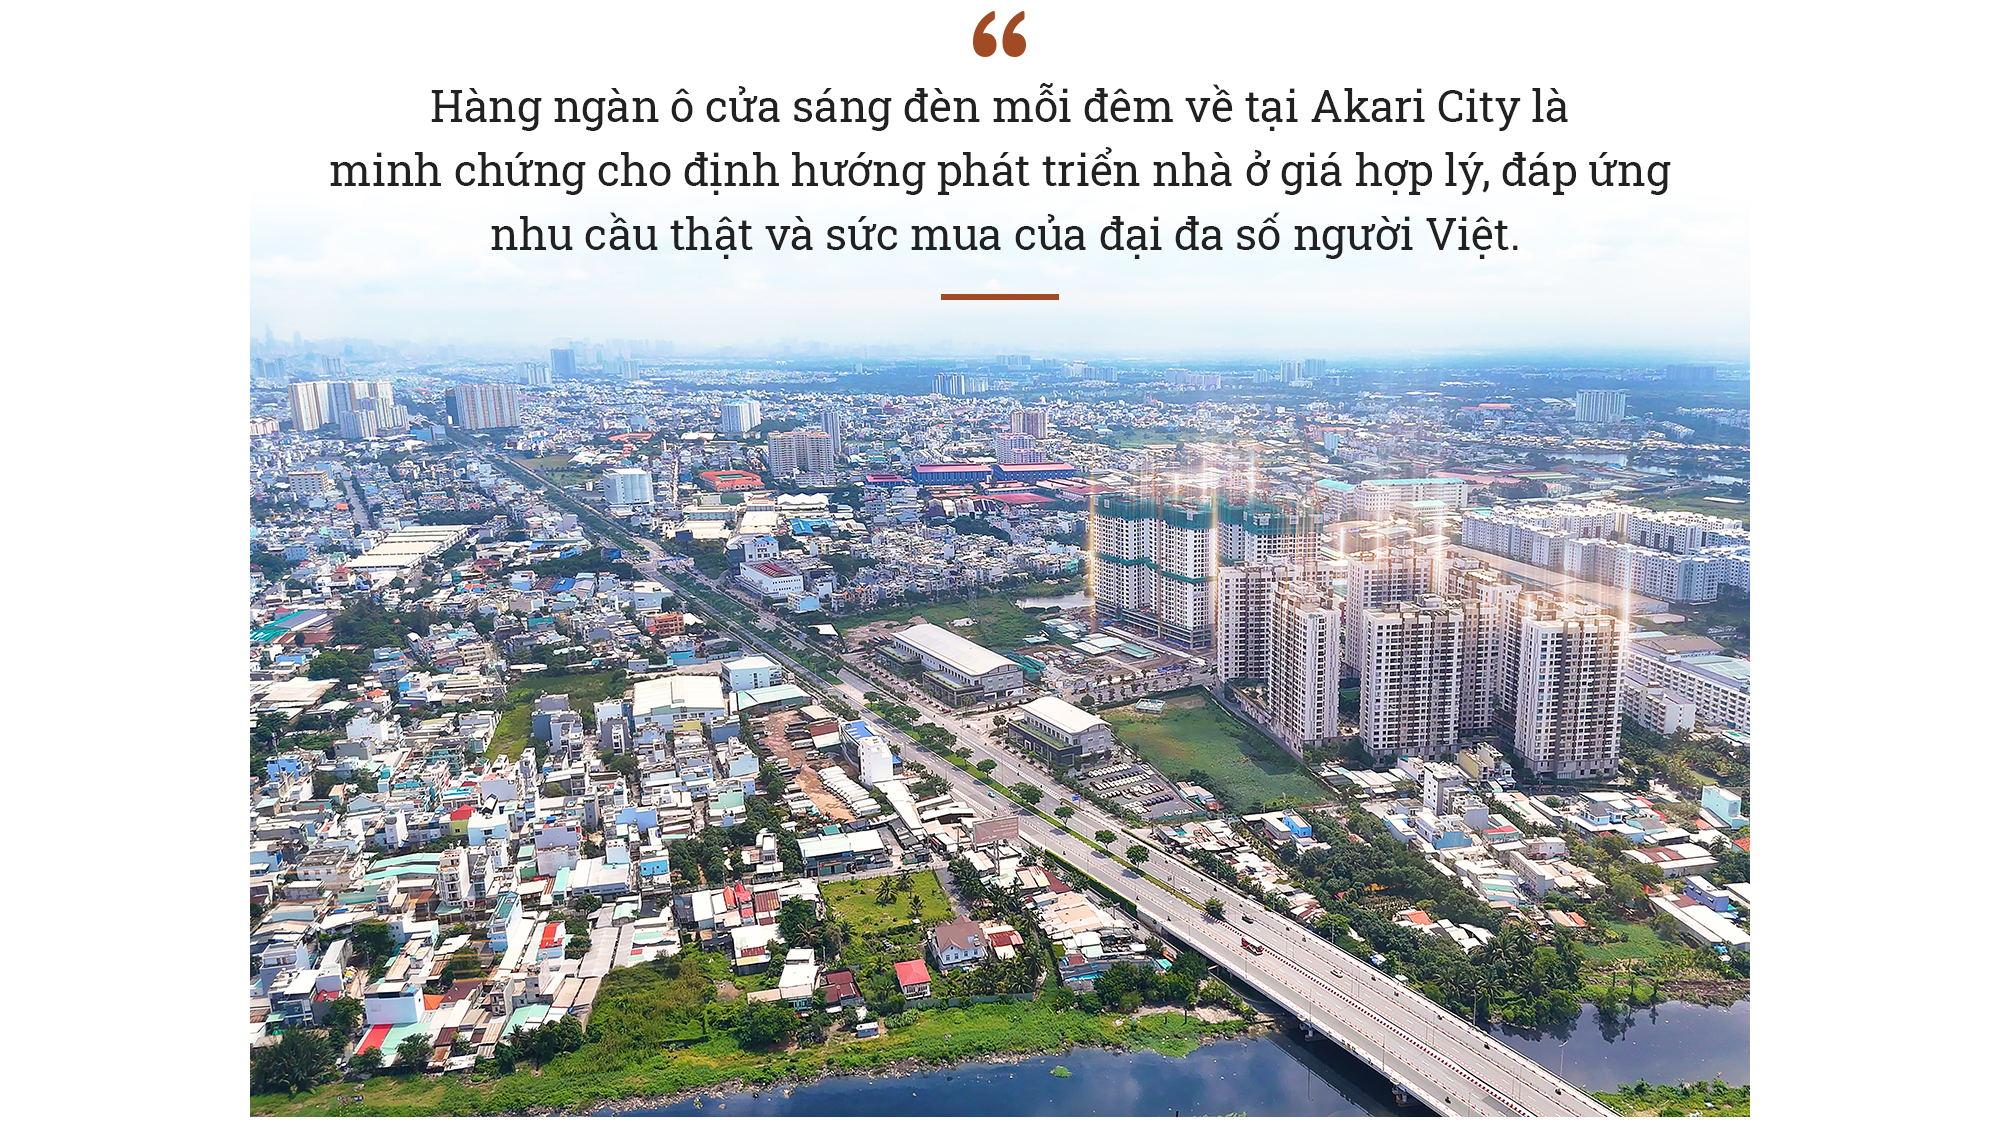 Akari City: Sức sống từ giá trị thật - Ảnh 2.